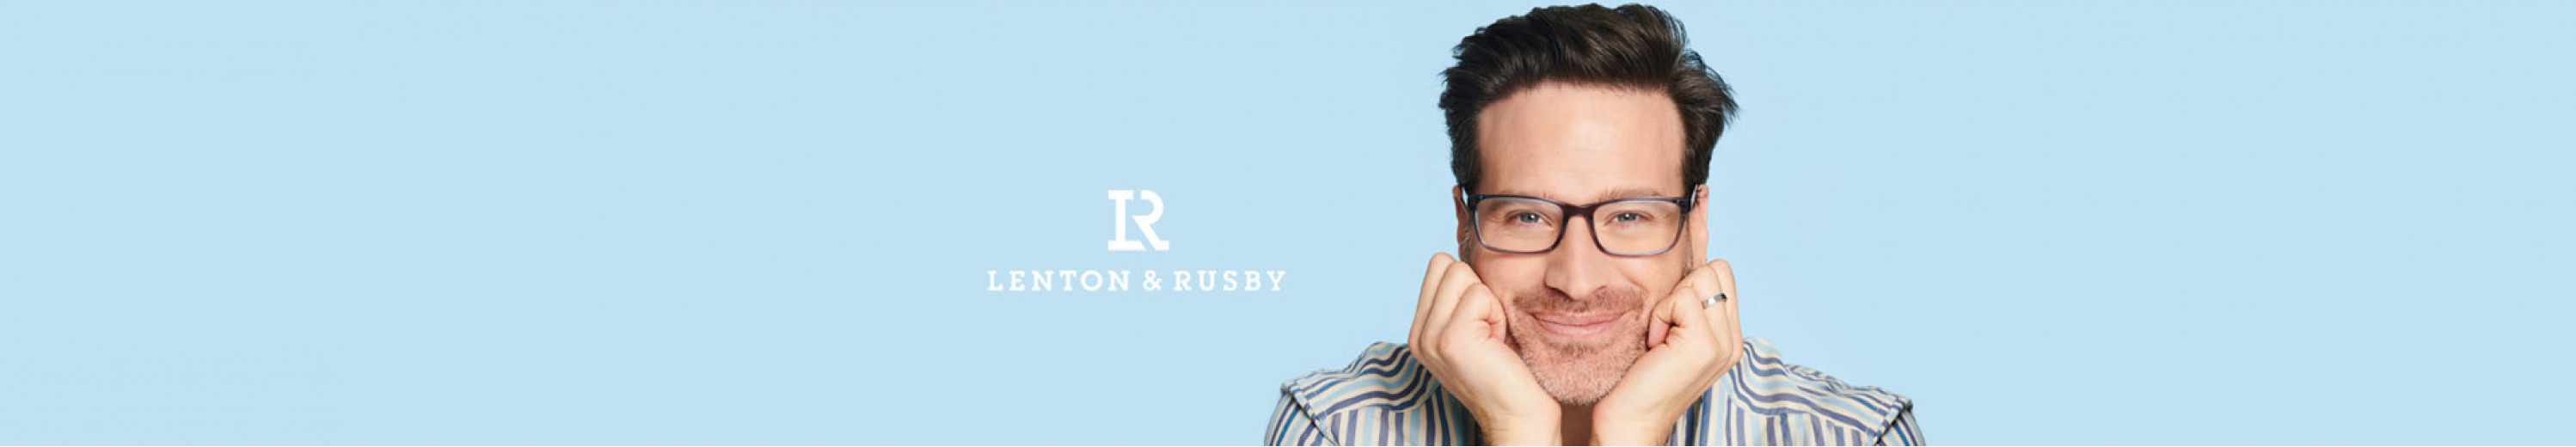 Lenton and Rusby Eyeglasses for Men